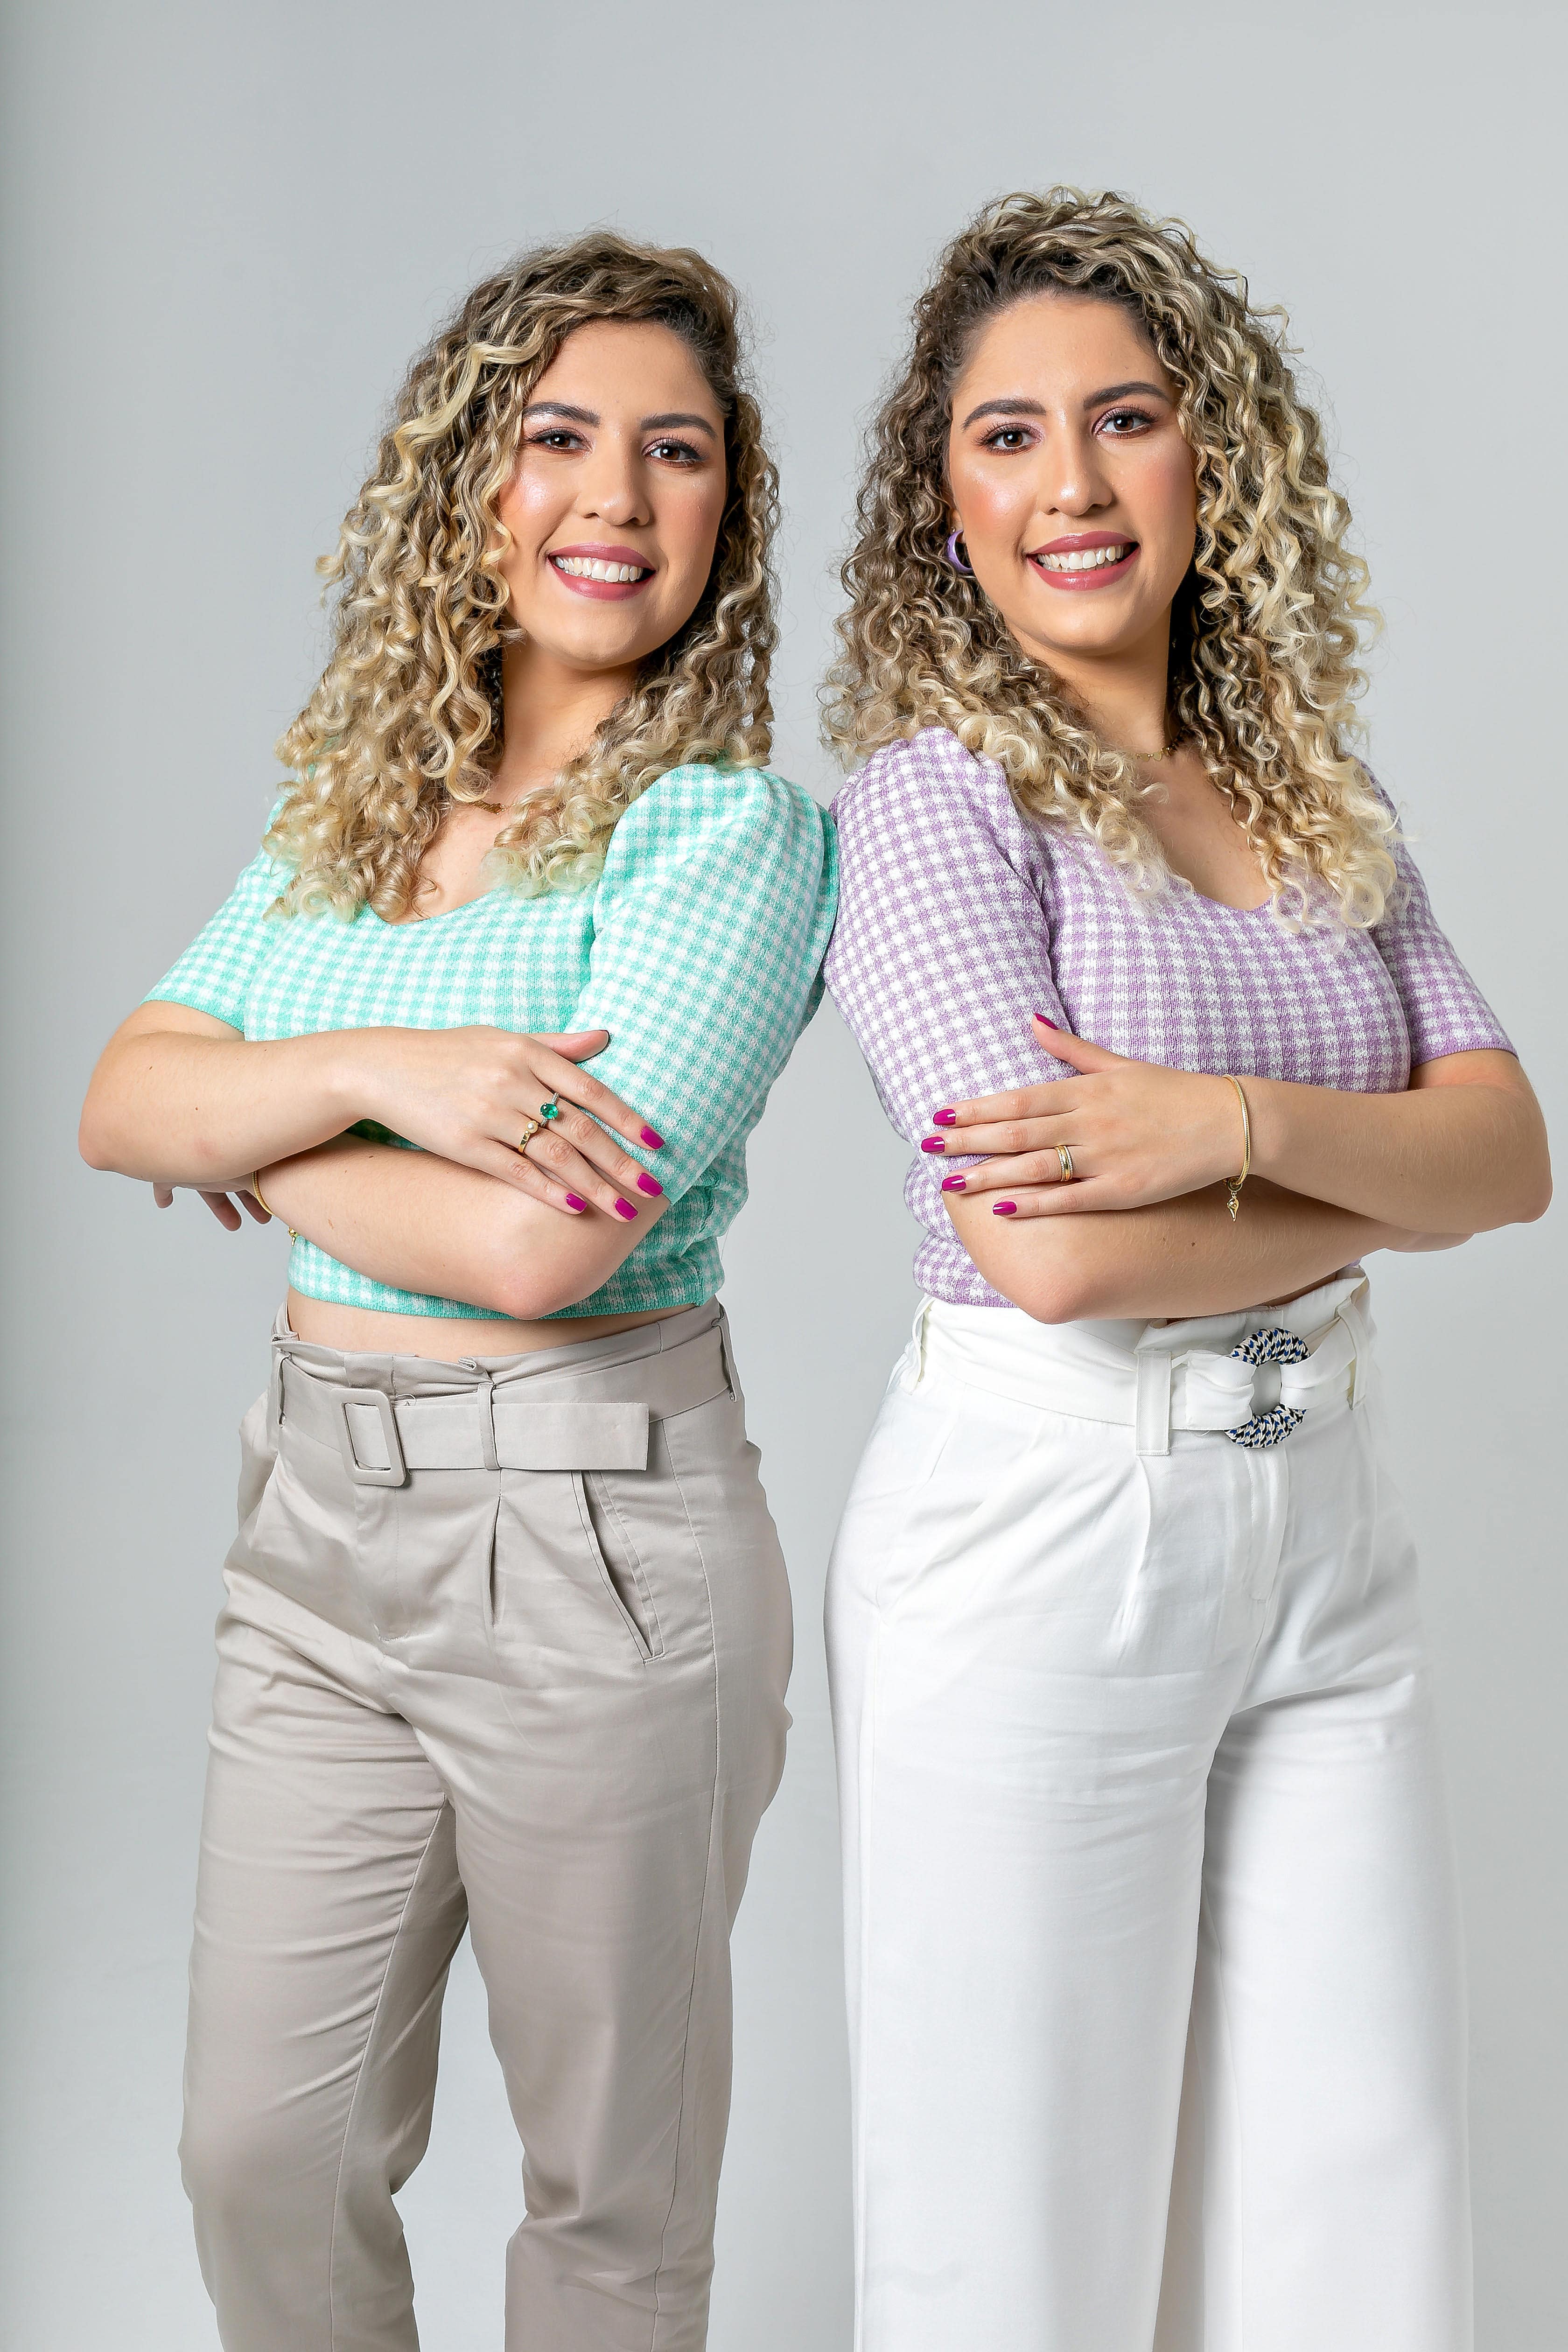 Nutricionistas Materno-infantil Amanda Biete e Camila Biete